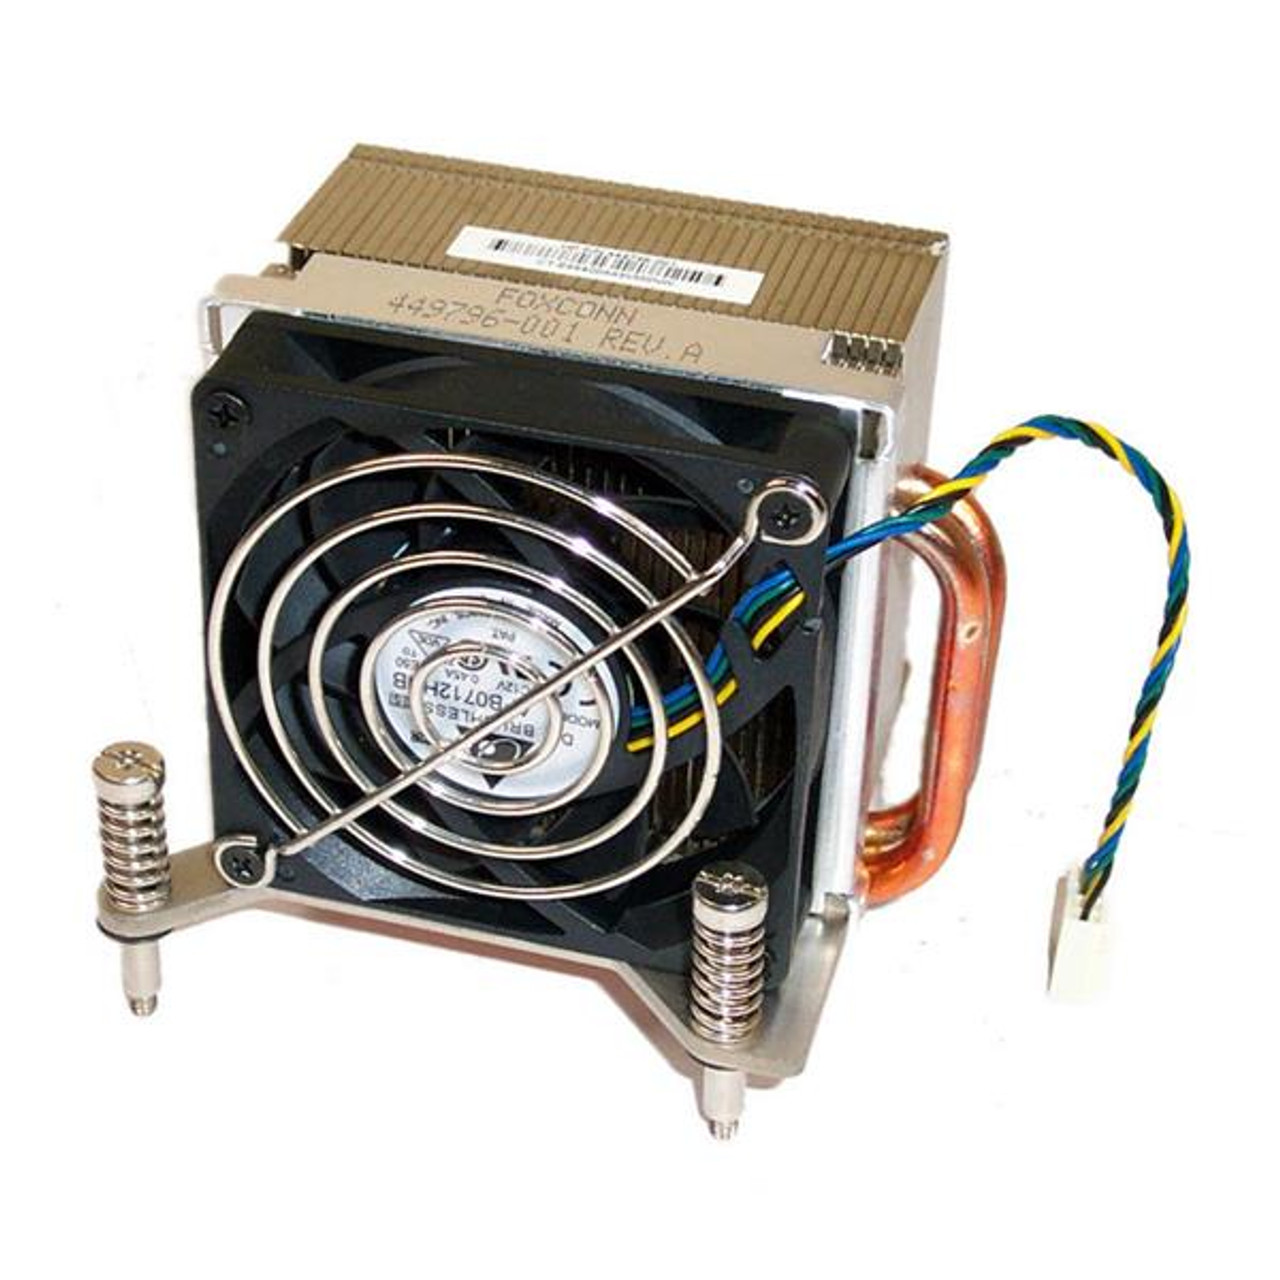 449796-001 HP CPU Cooler Heatsink for Compaq Dc7900p